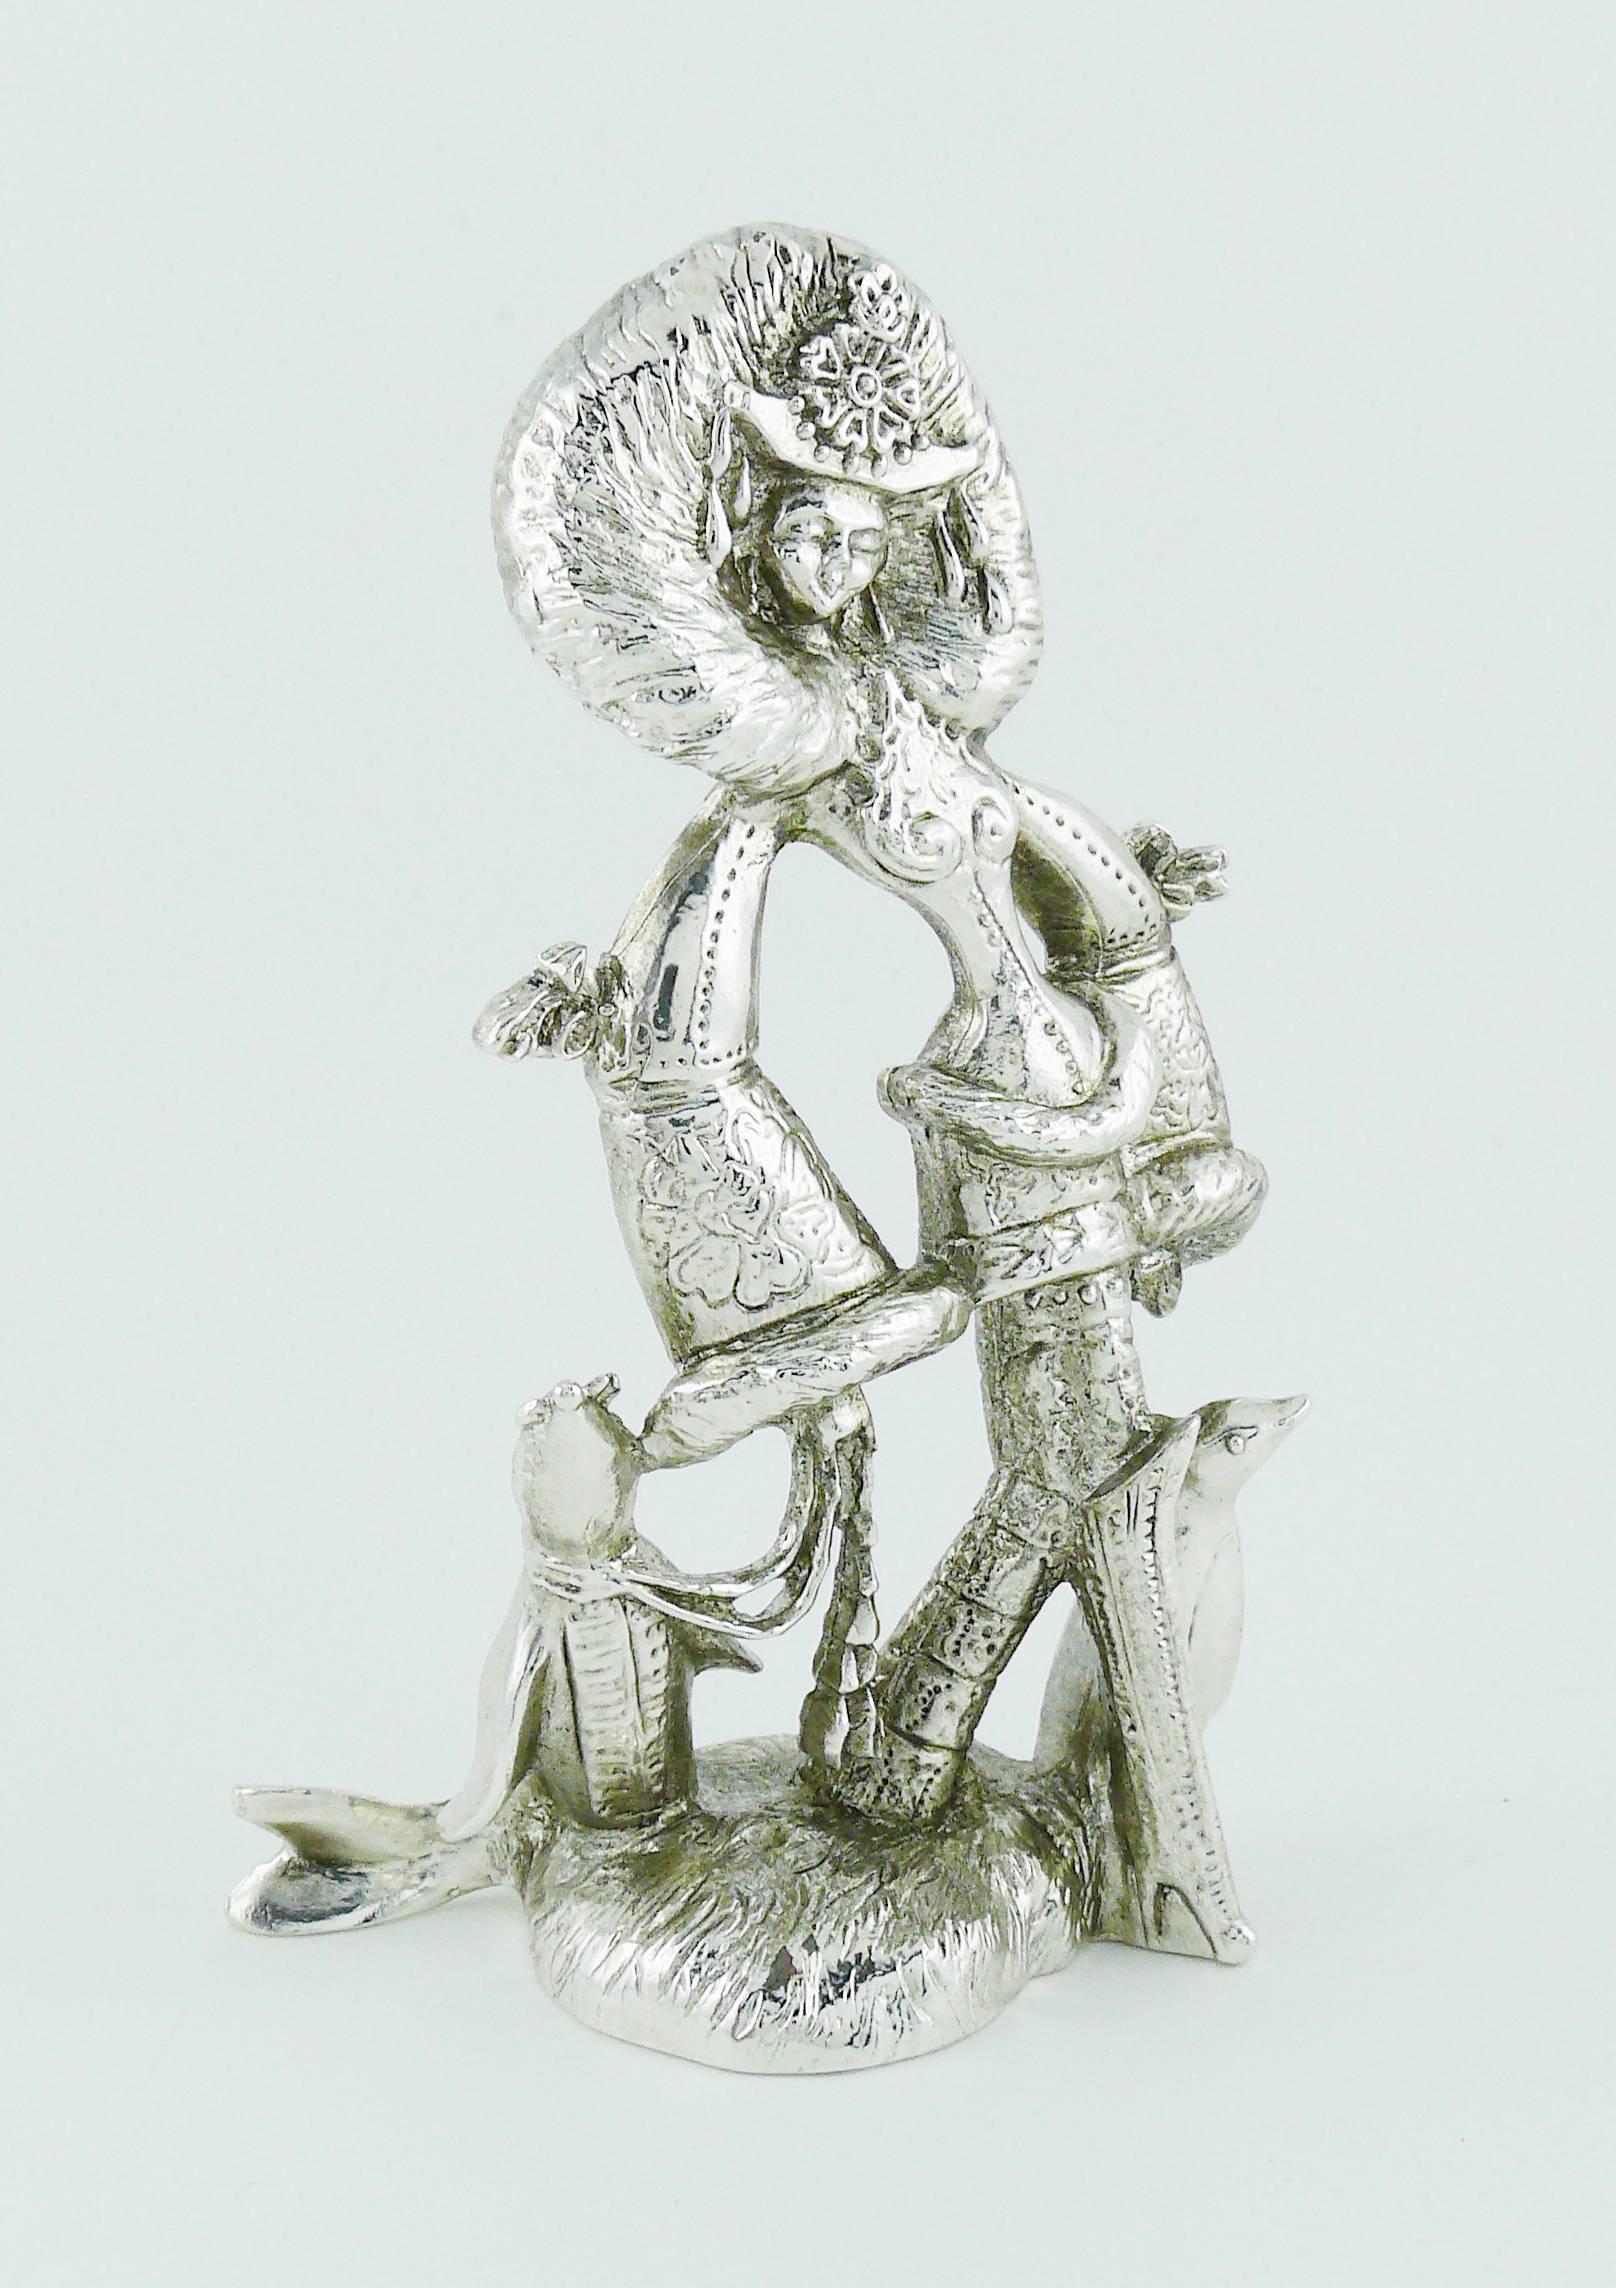 CHRISTIAN LACROIX Vintage seltene silber getönte Briefbeschwerer-Statue mit einer möglichen Allegorie des Kontinents Antarktis.

Sammlerstück.

Geprägtes CHRISTIAN LACROIX Frankreich.
Markenzeichen des Herstellers.

Ungefähre Maße: Höhe ca. 12,4 cm